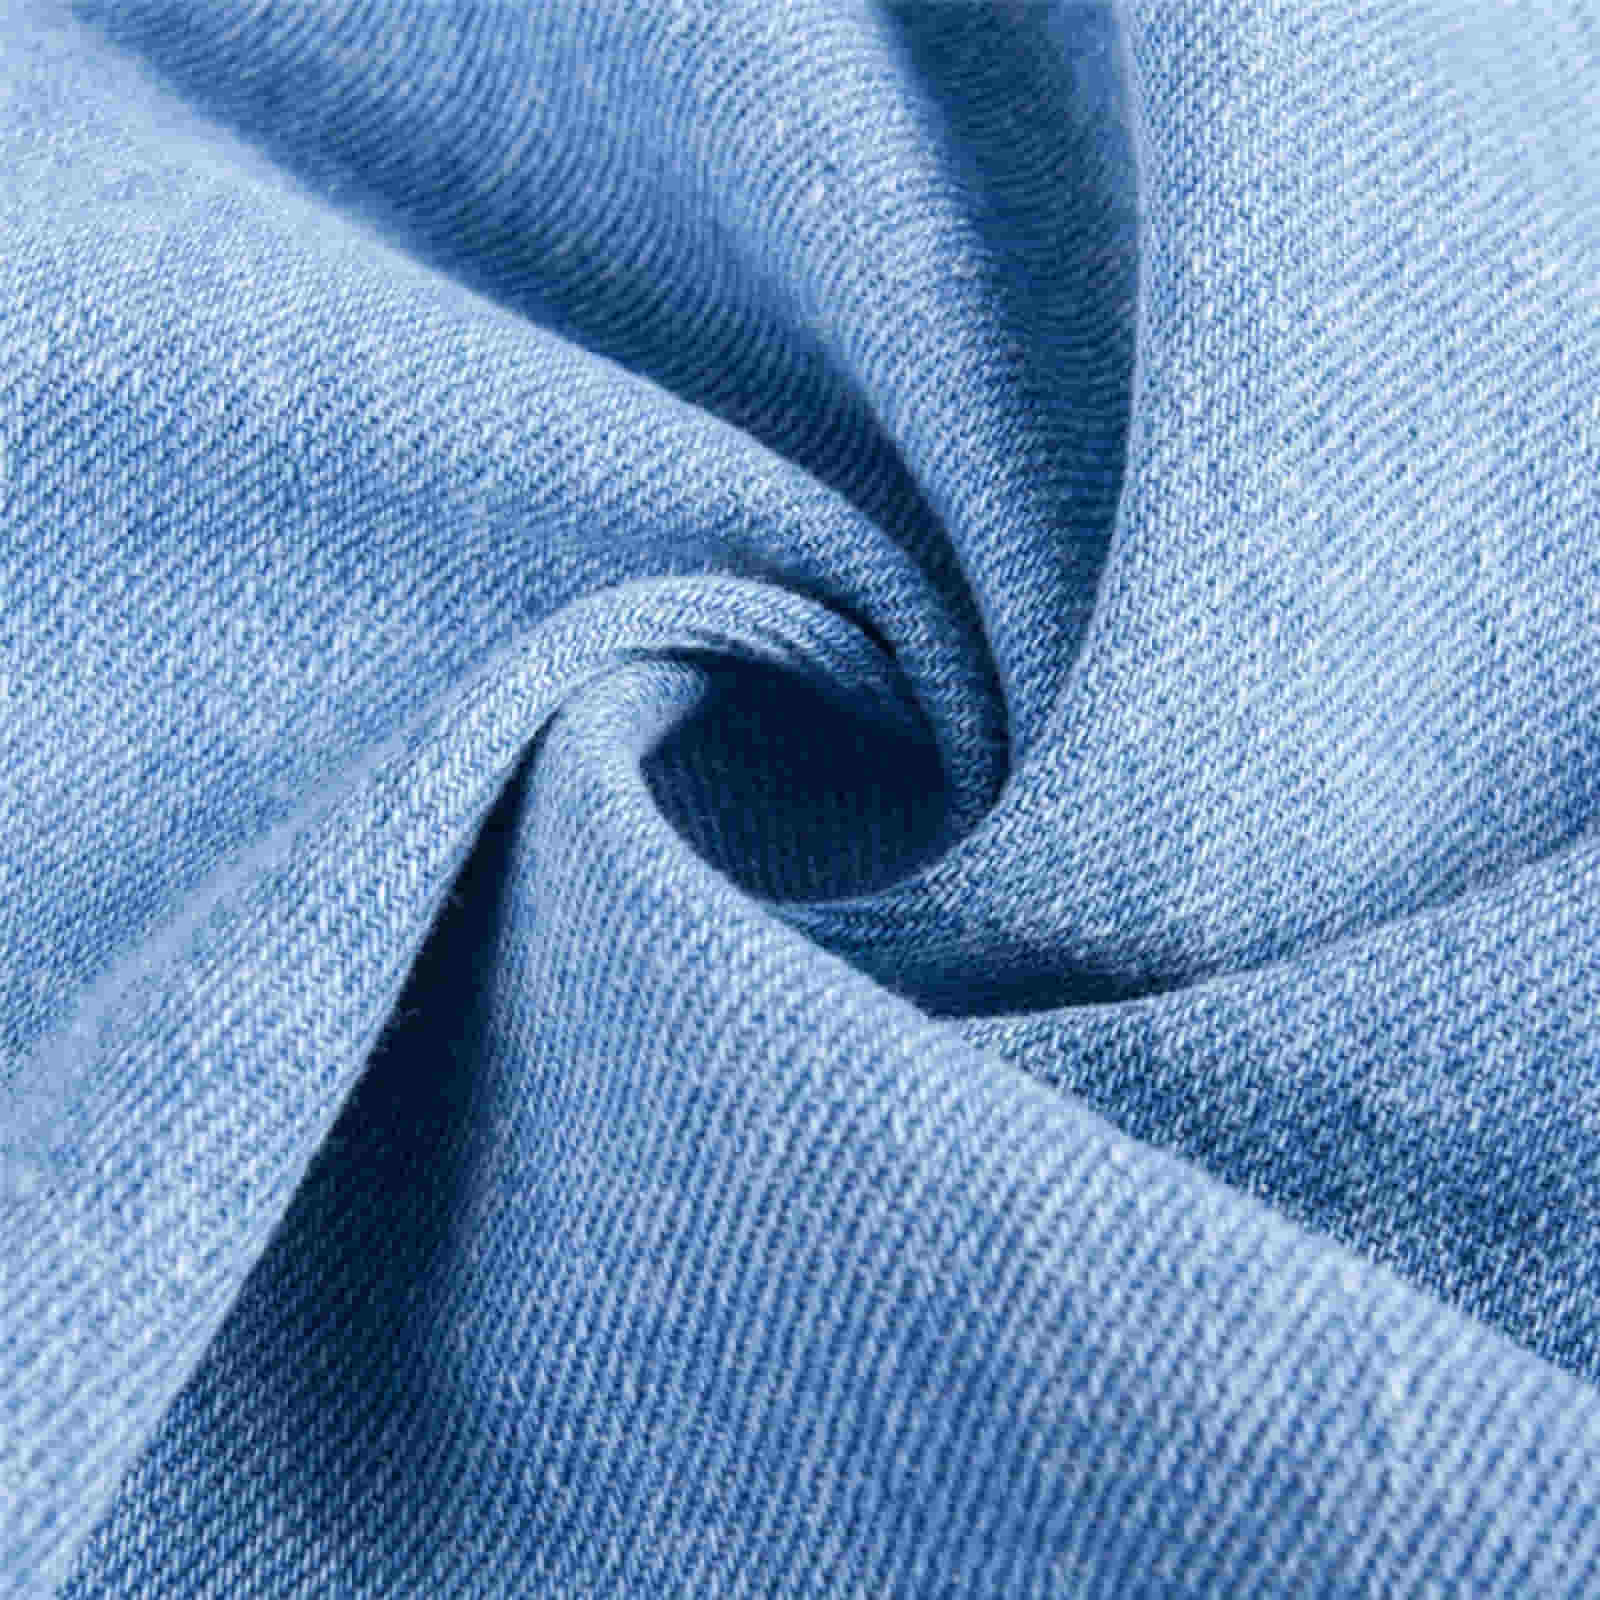 Vải cotton Denim là gì? Phân loại, ưu nhược điểm và ứng dụng vải voan